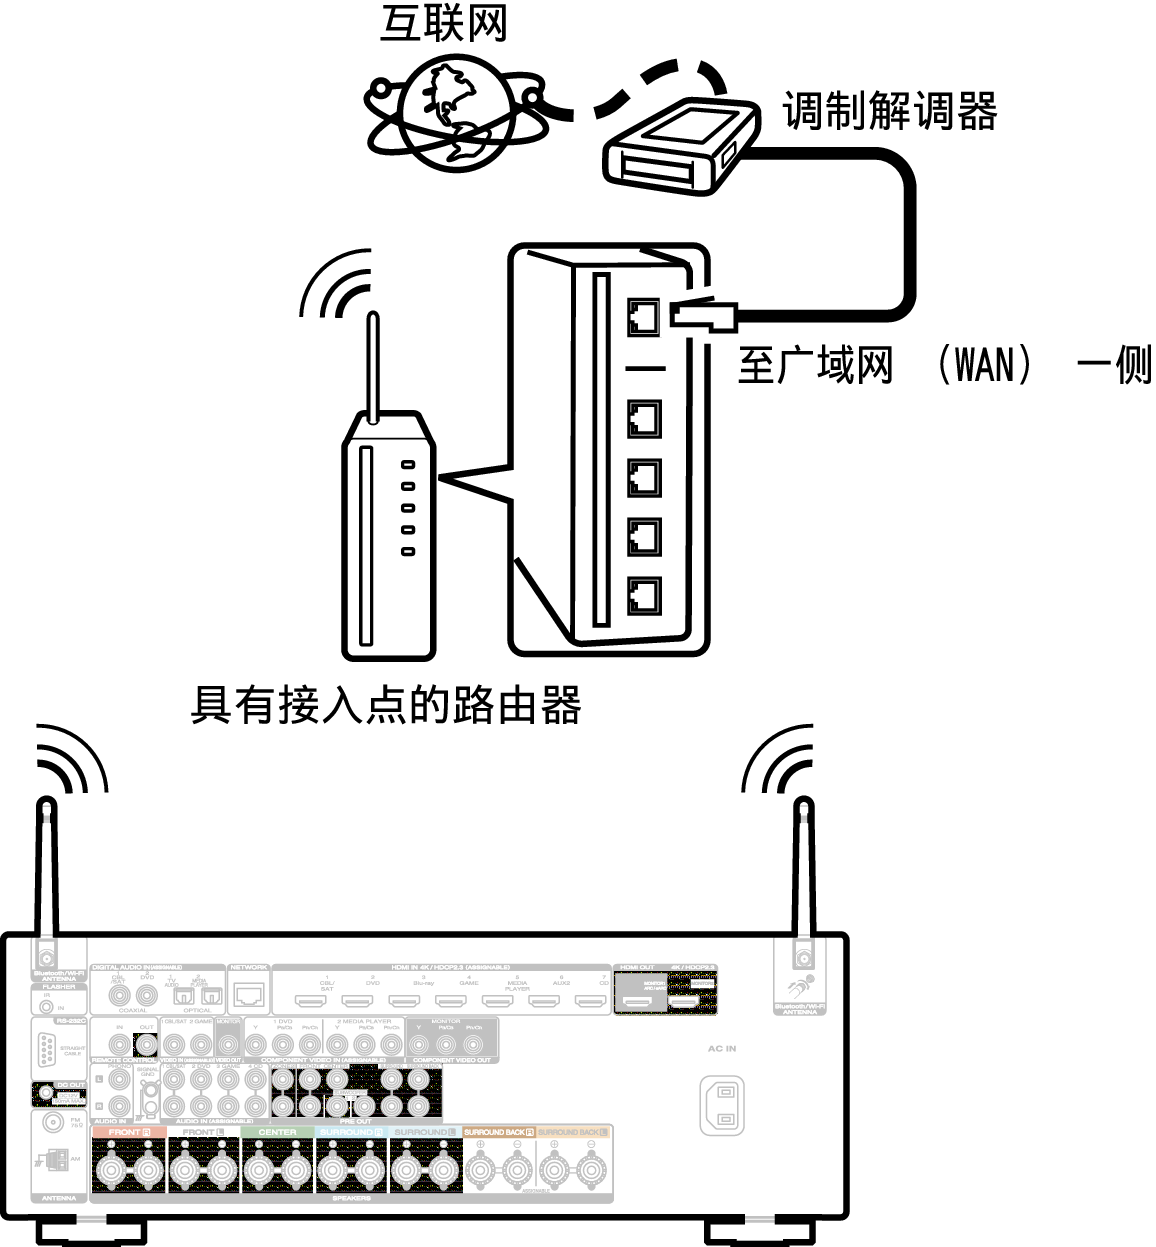 Conne Wireless S54U